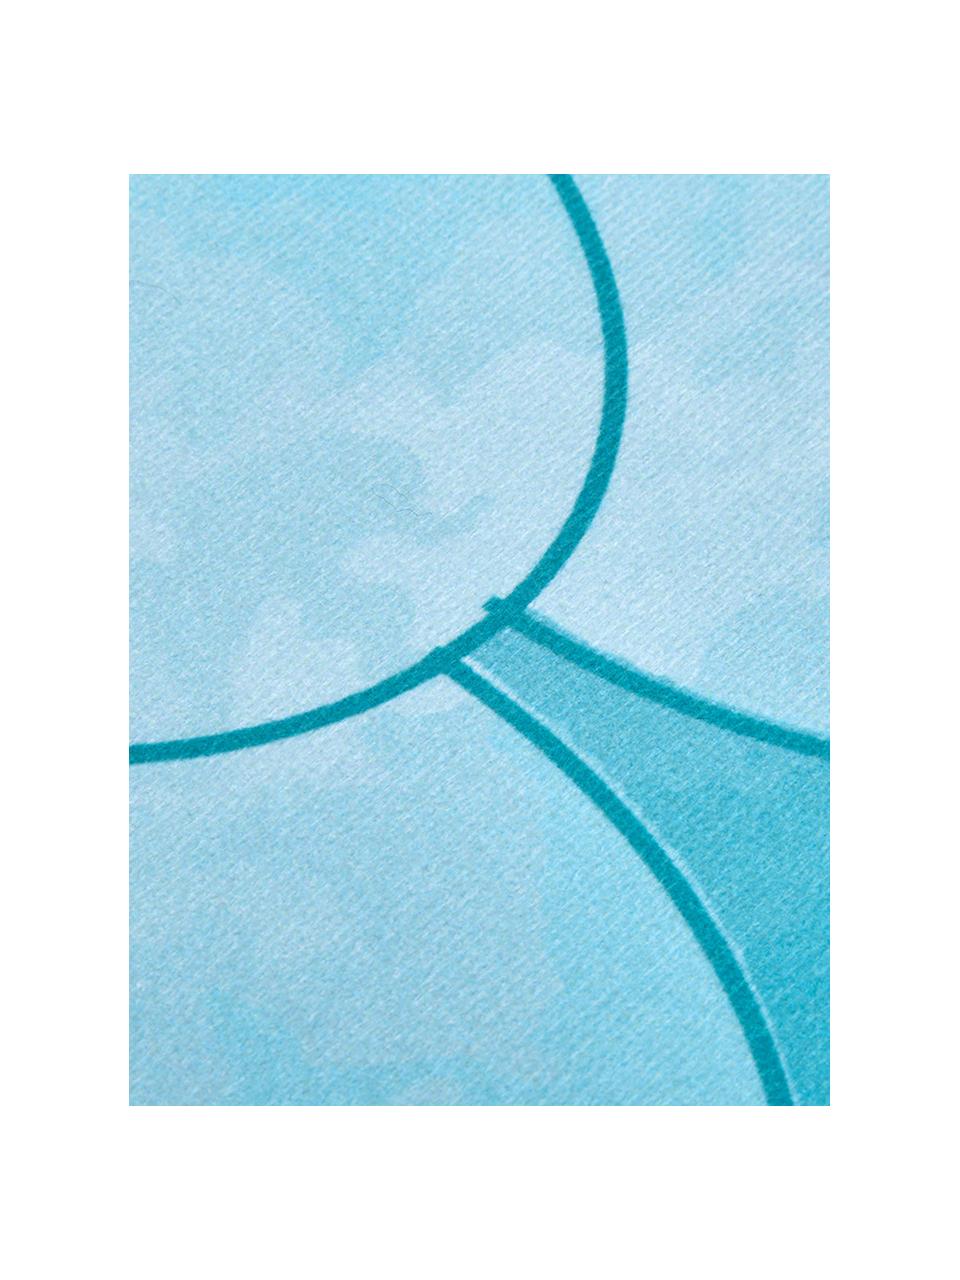 Telo mare Mermaid, 55% poliestere, 45% cotone
Qualità molto leggera 340 g/m², Azzurro, turchese, bianco, Larg. 87 x Lung. 180 cm